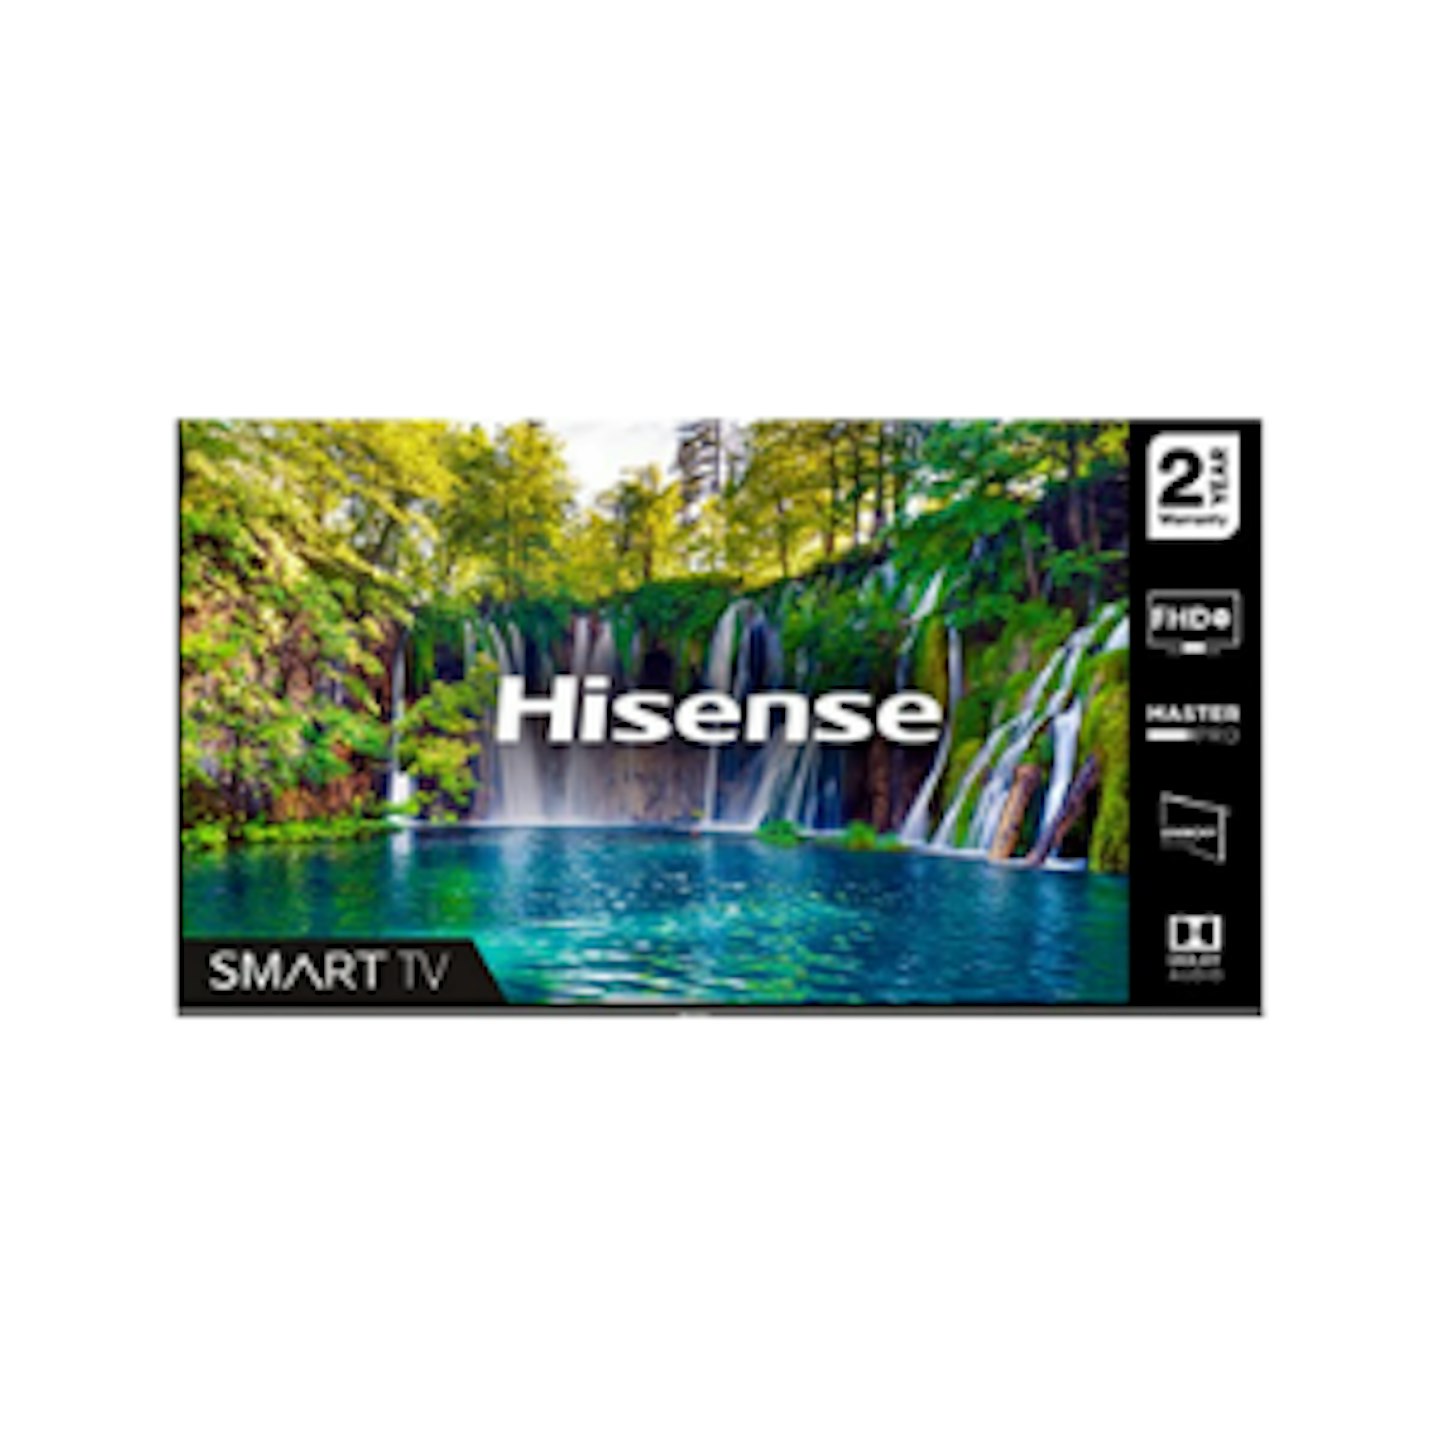 HISENSE 40A5600FTUK 40-inch Full HD 1080P